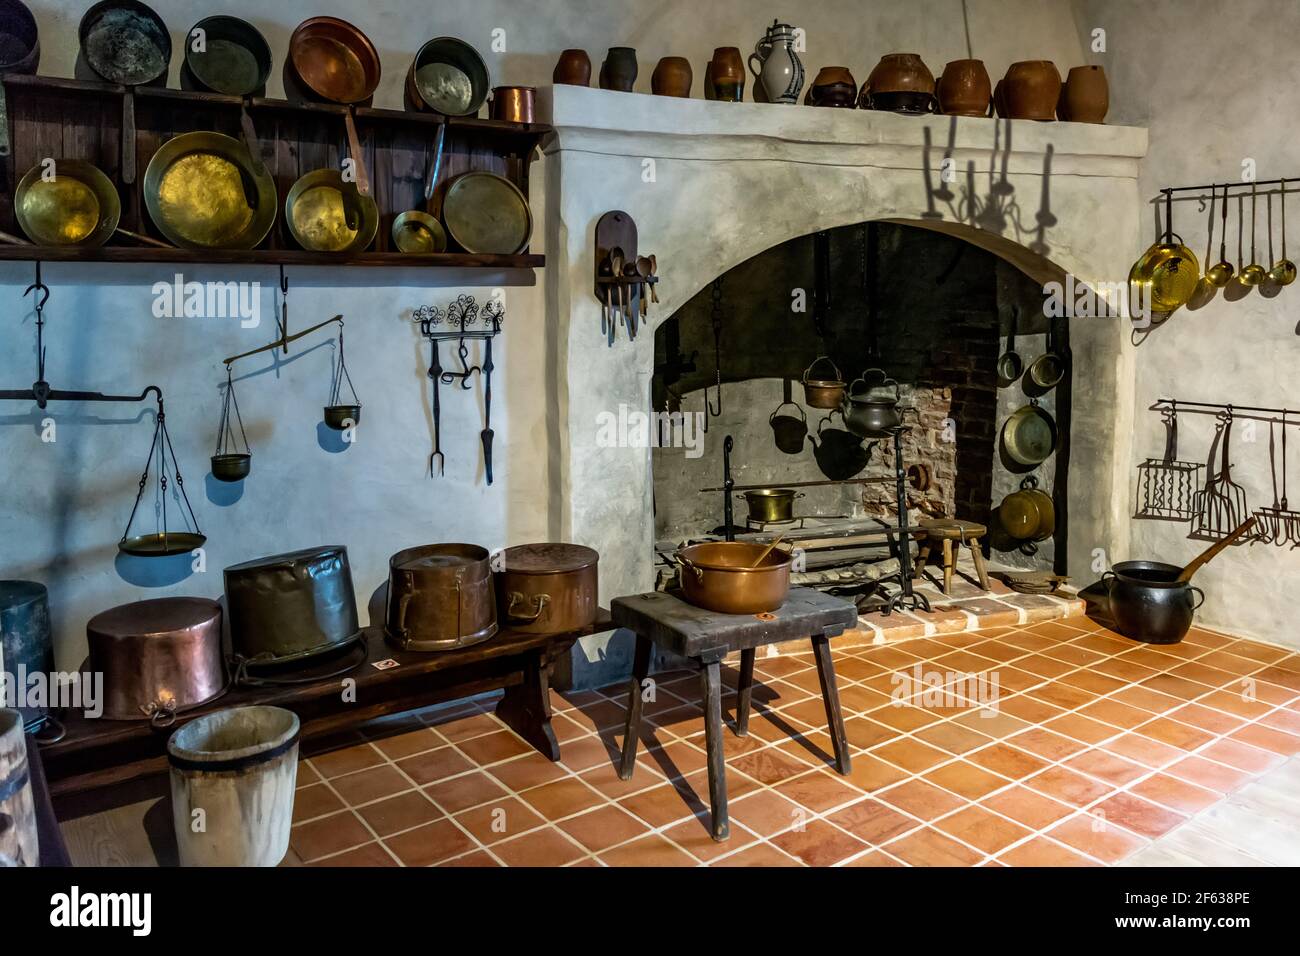 L'intérieur du château de Bauska est doté d'une cuisine en laiton du XVIe au XVIIe siècle, d'un fer à repasser et d'un équipement de cuisine en bois Banque D'Images